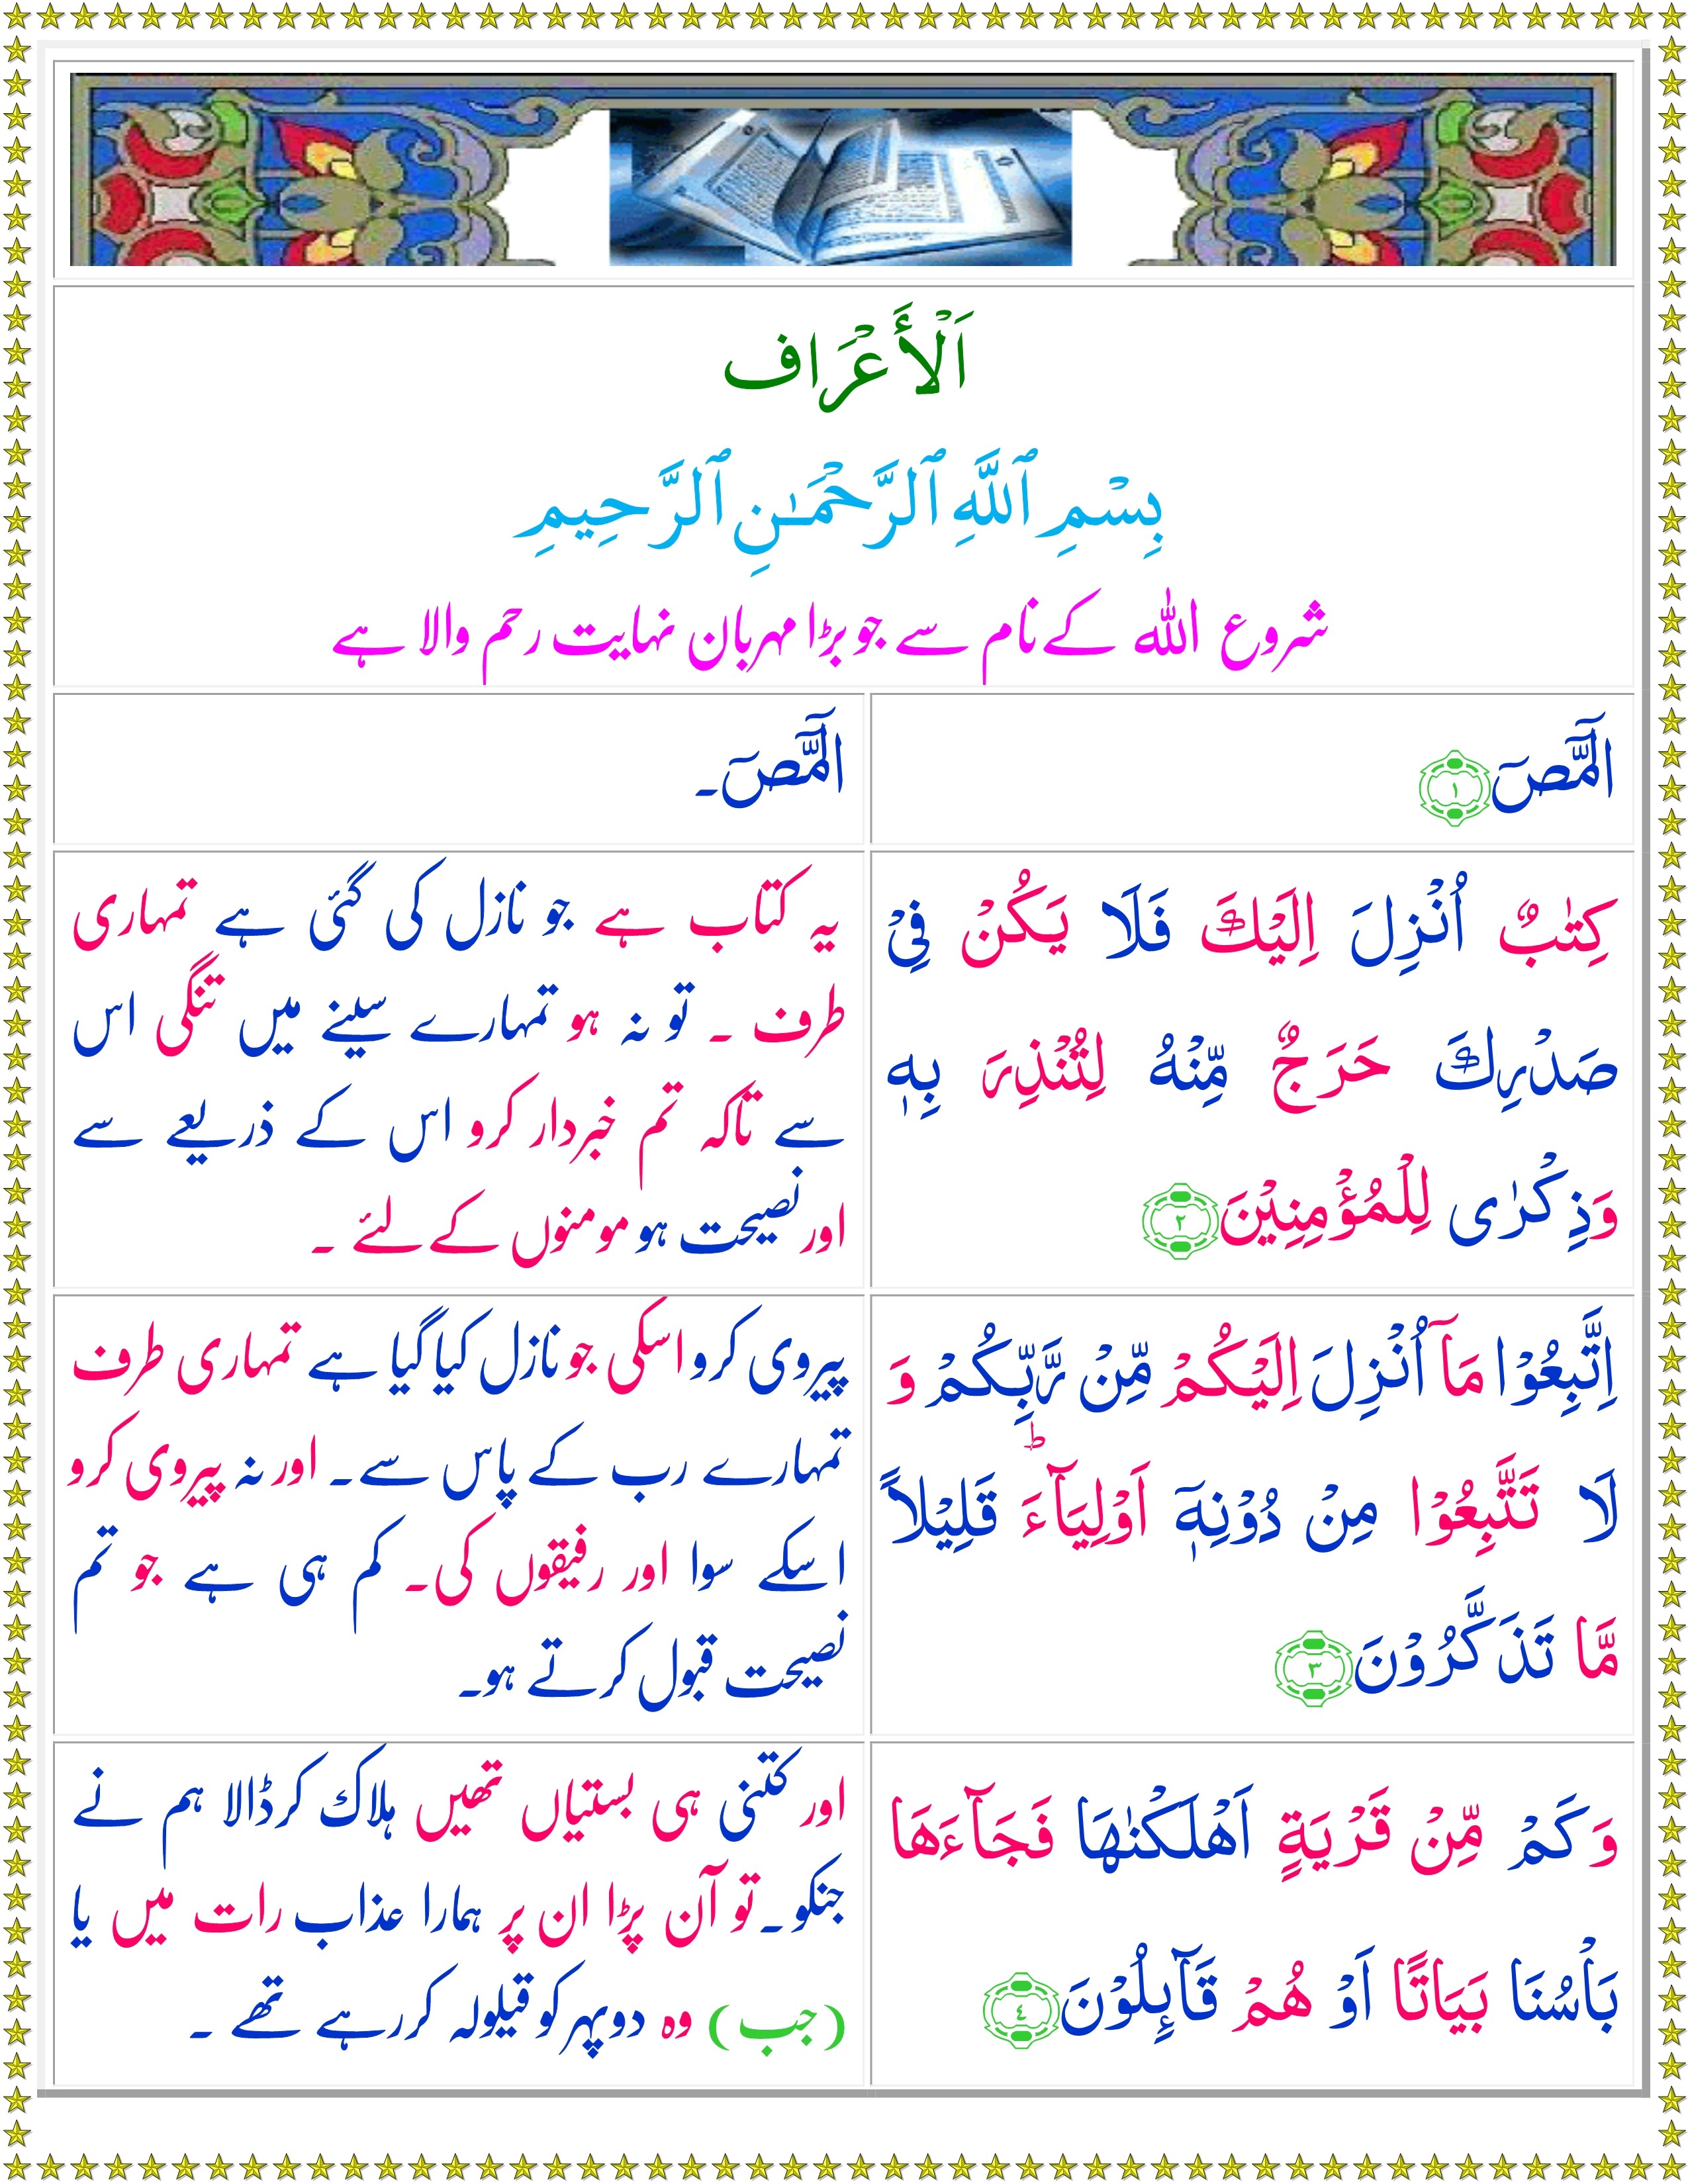 free download quran majeed with urdu translation